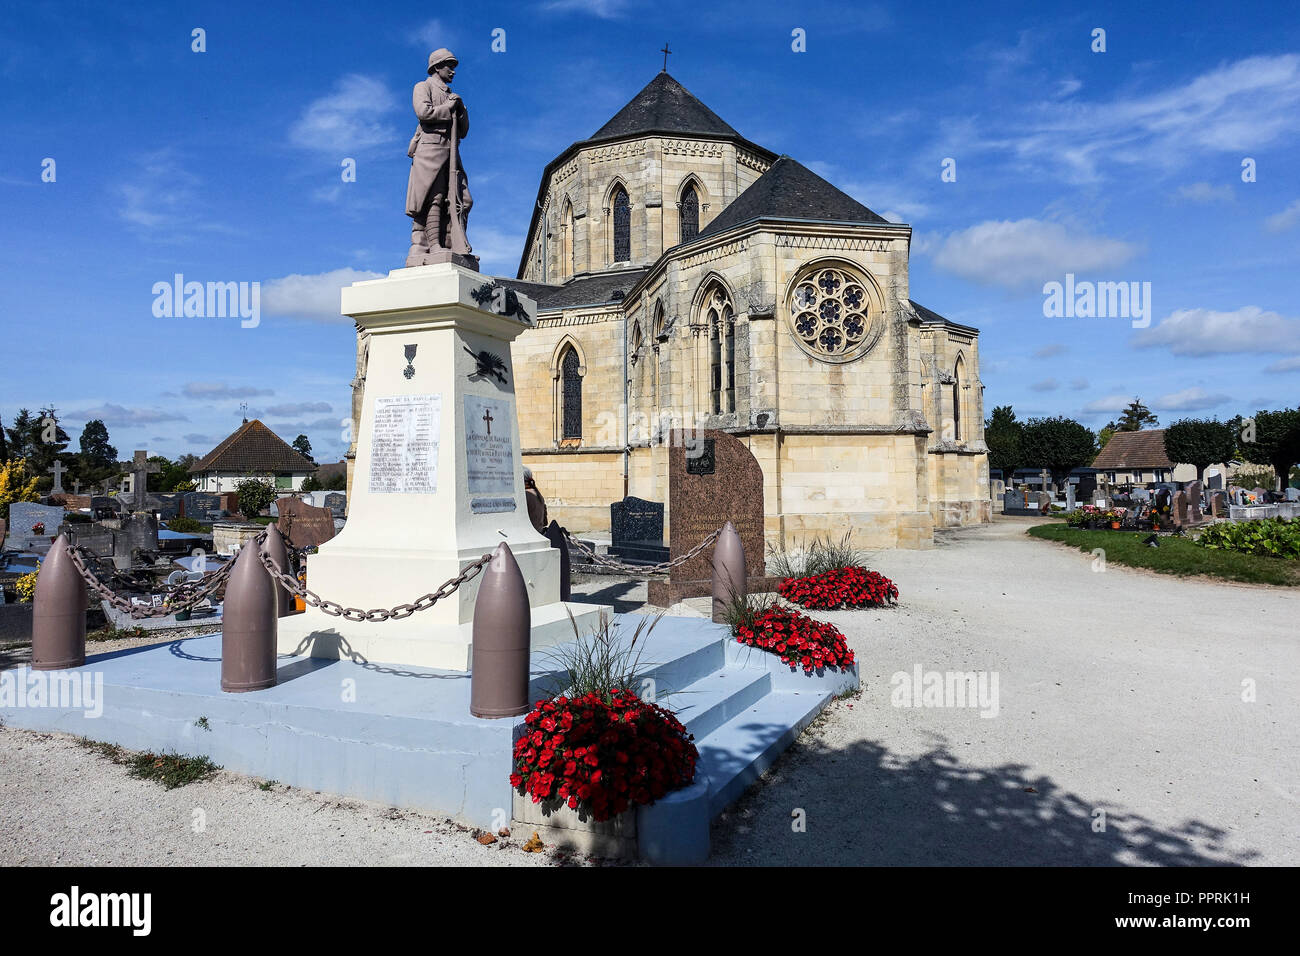 Ranville Église, Normandie. Ranville a été la première ville libérée par les parachutistes britanniques le jour J, le 6 juin 1944 Banque D'Images